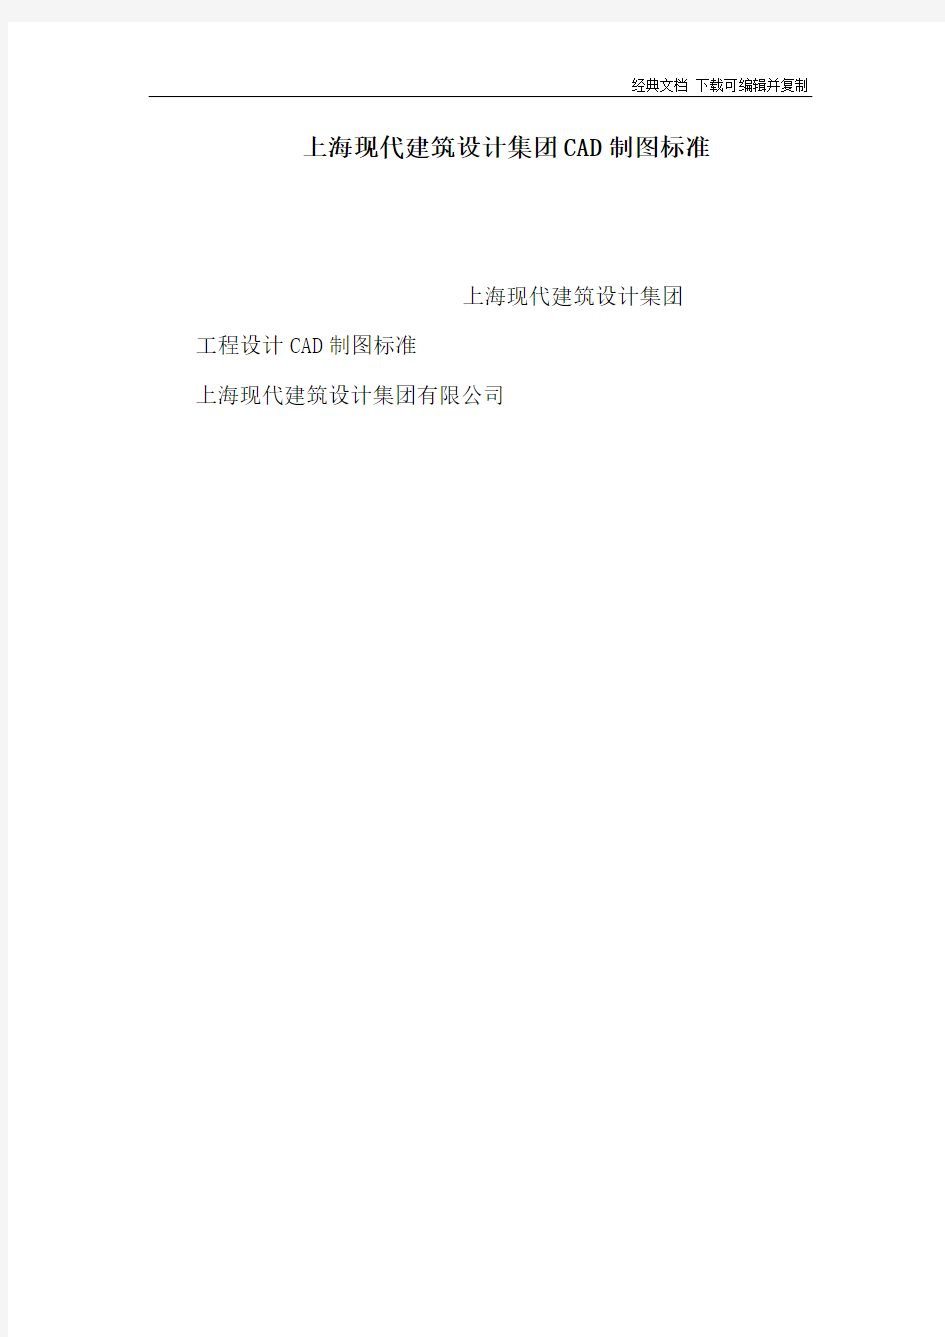 上海现代建筑设计集团CAD制图标准(可编辑)(1)